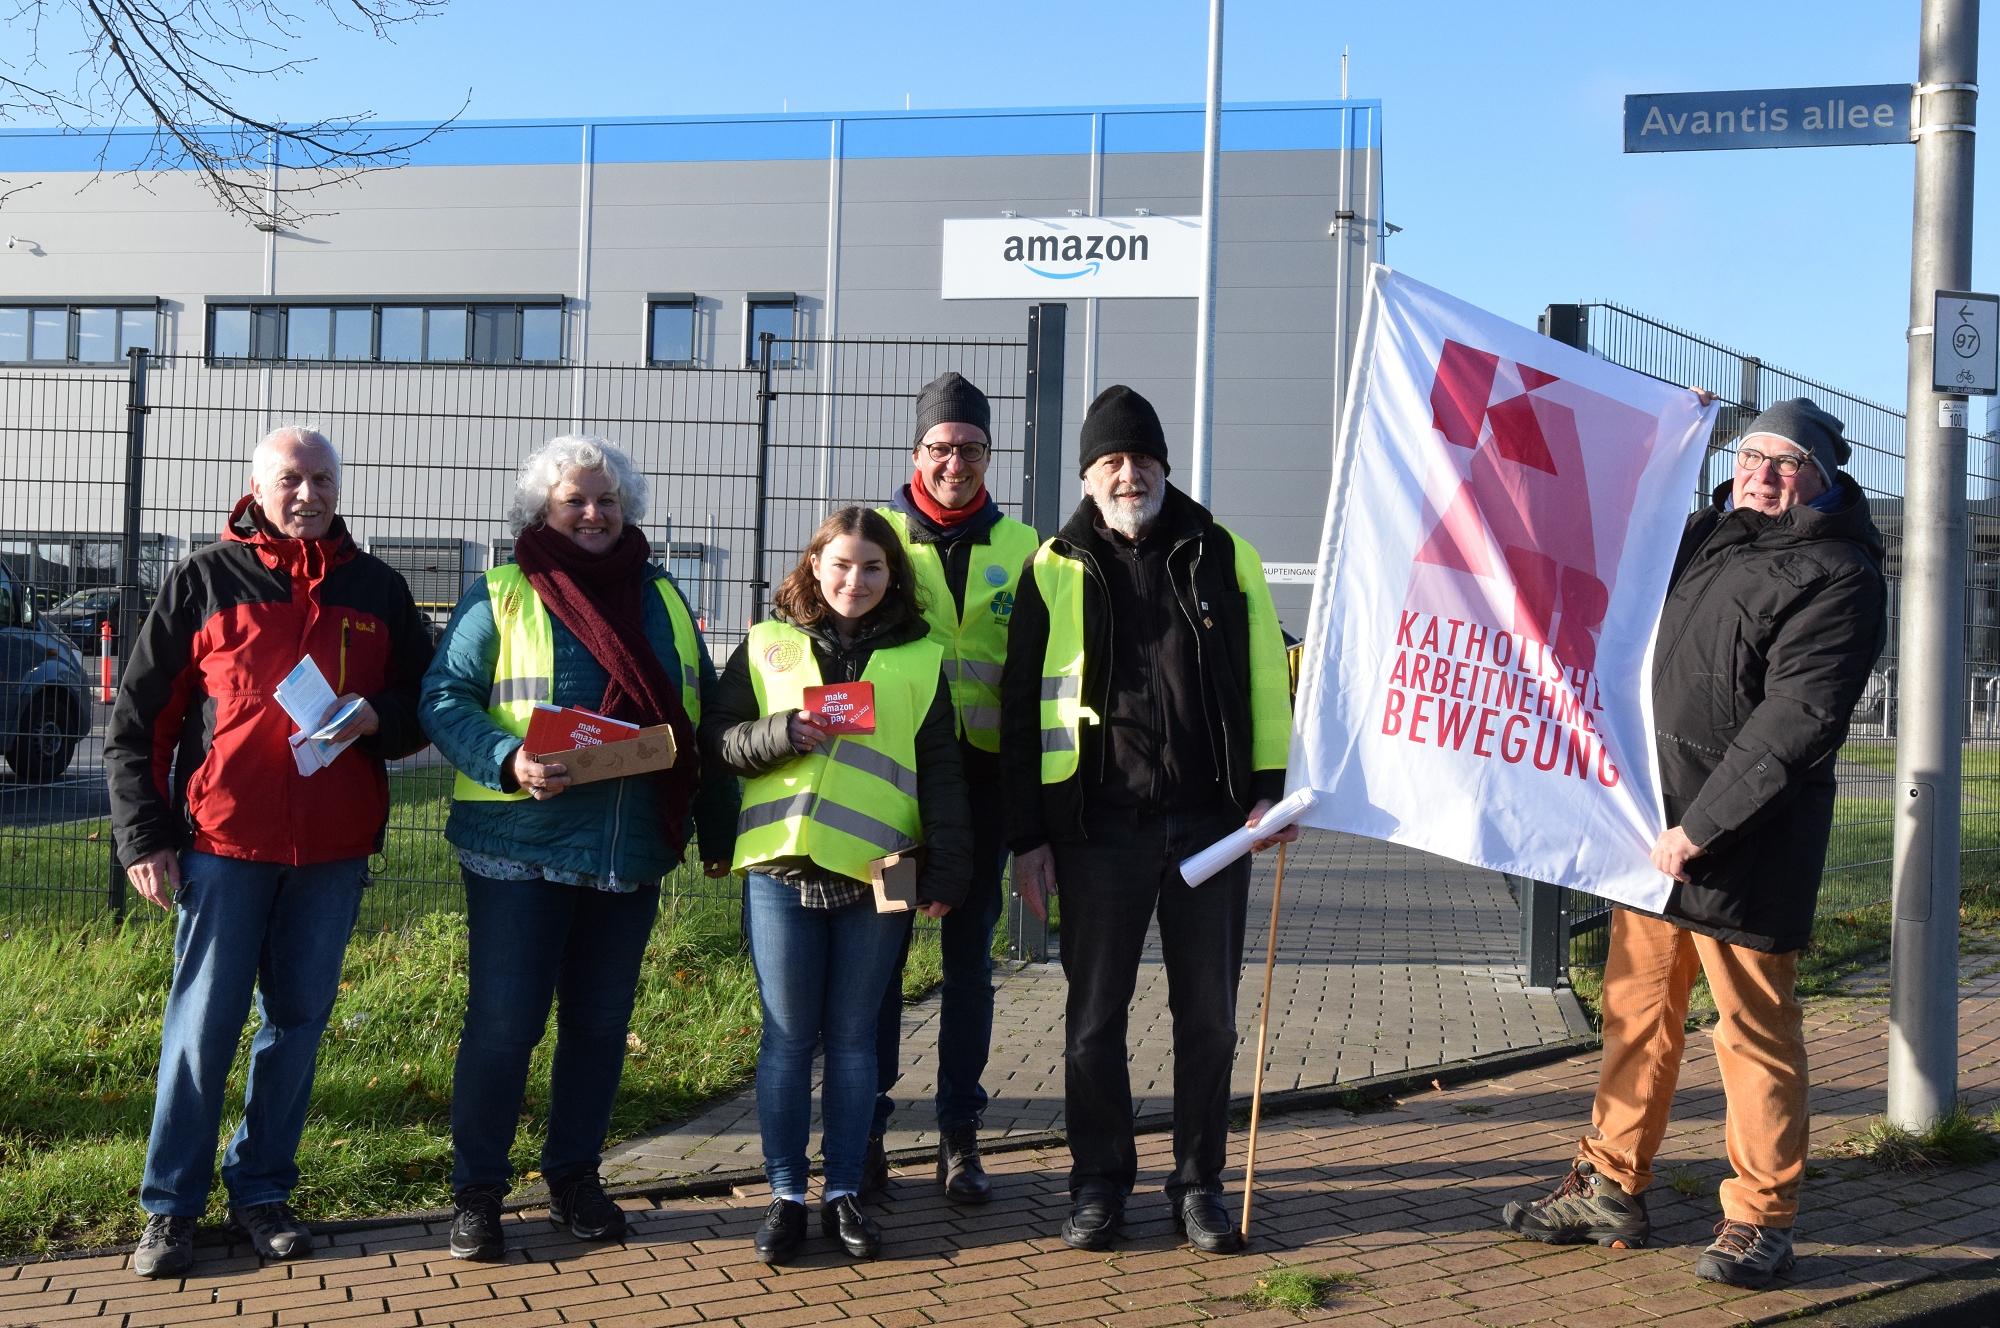 solidarisches Zeichen setzen am Amazon-Verteilzentrum in Aachen (c) Thomas Hohenschue